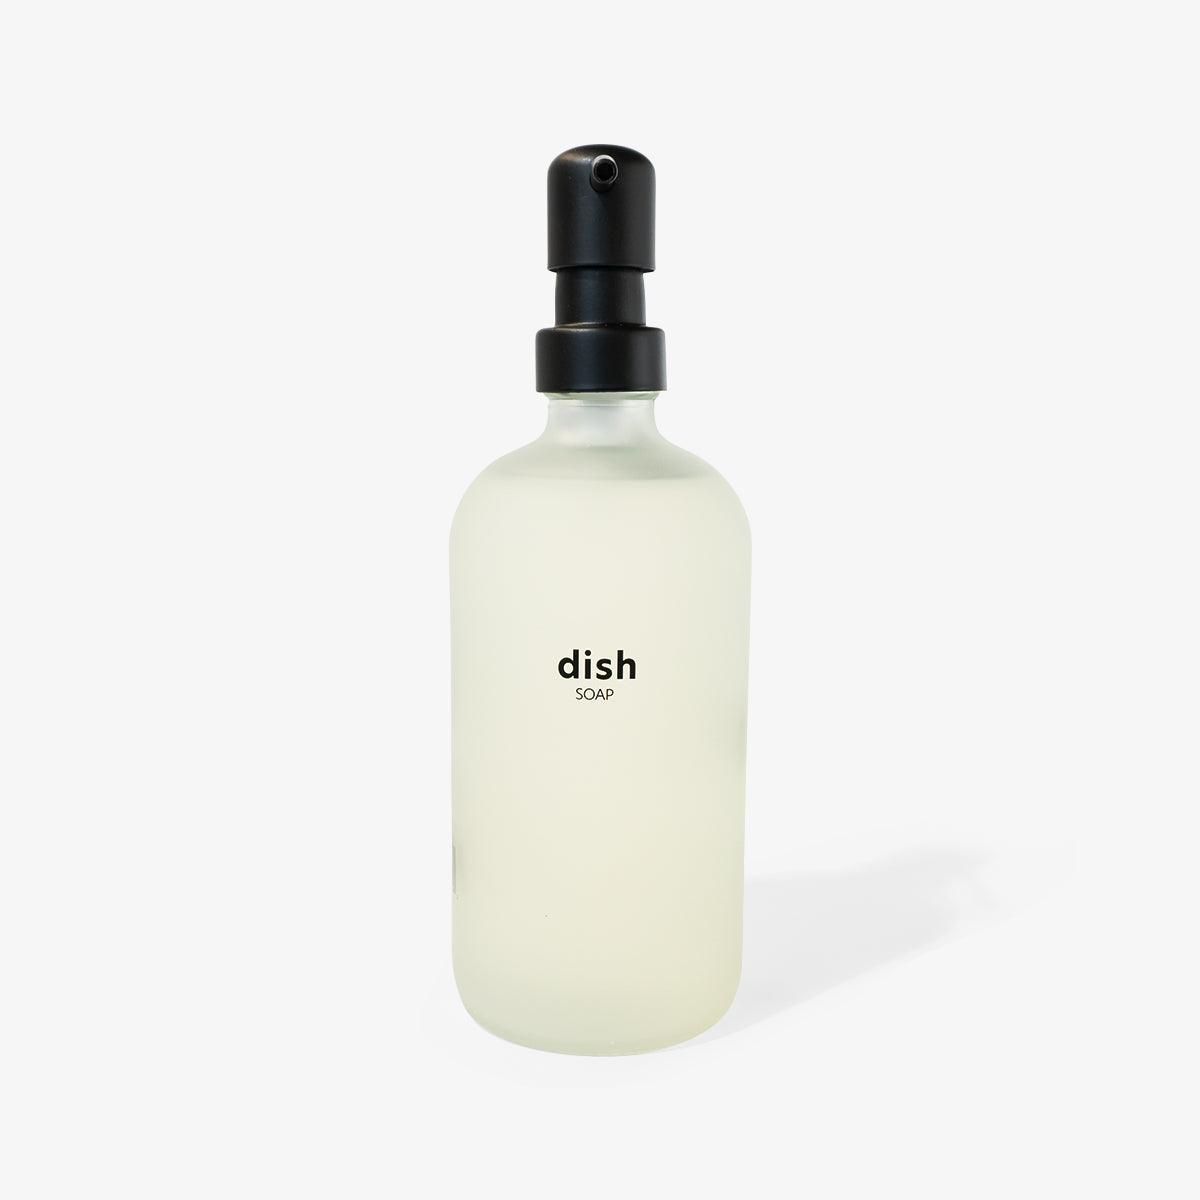 Dish Soap & Brush Kit